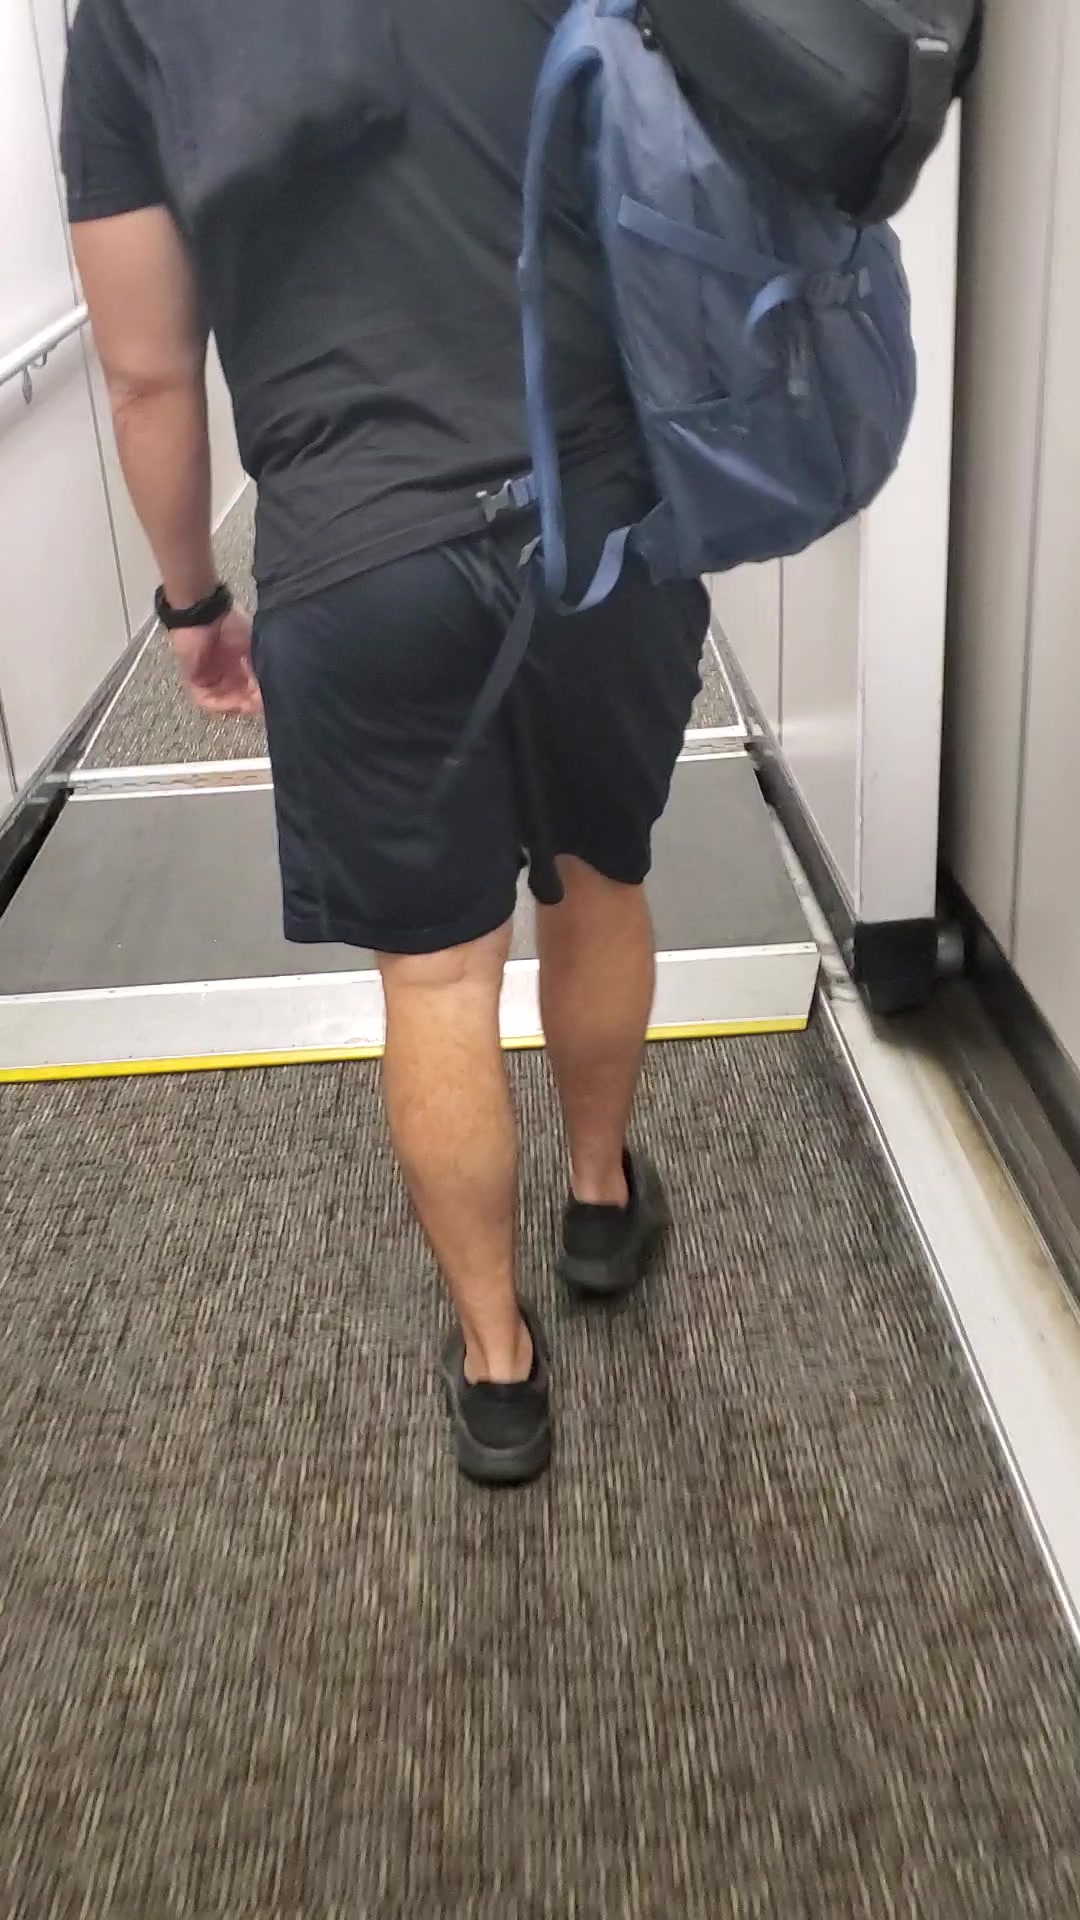 Nice butt in shorts